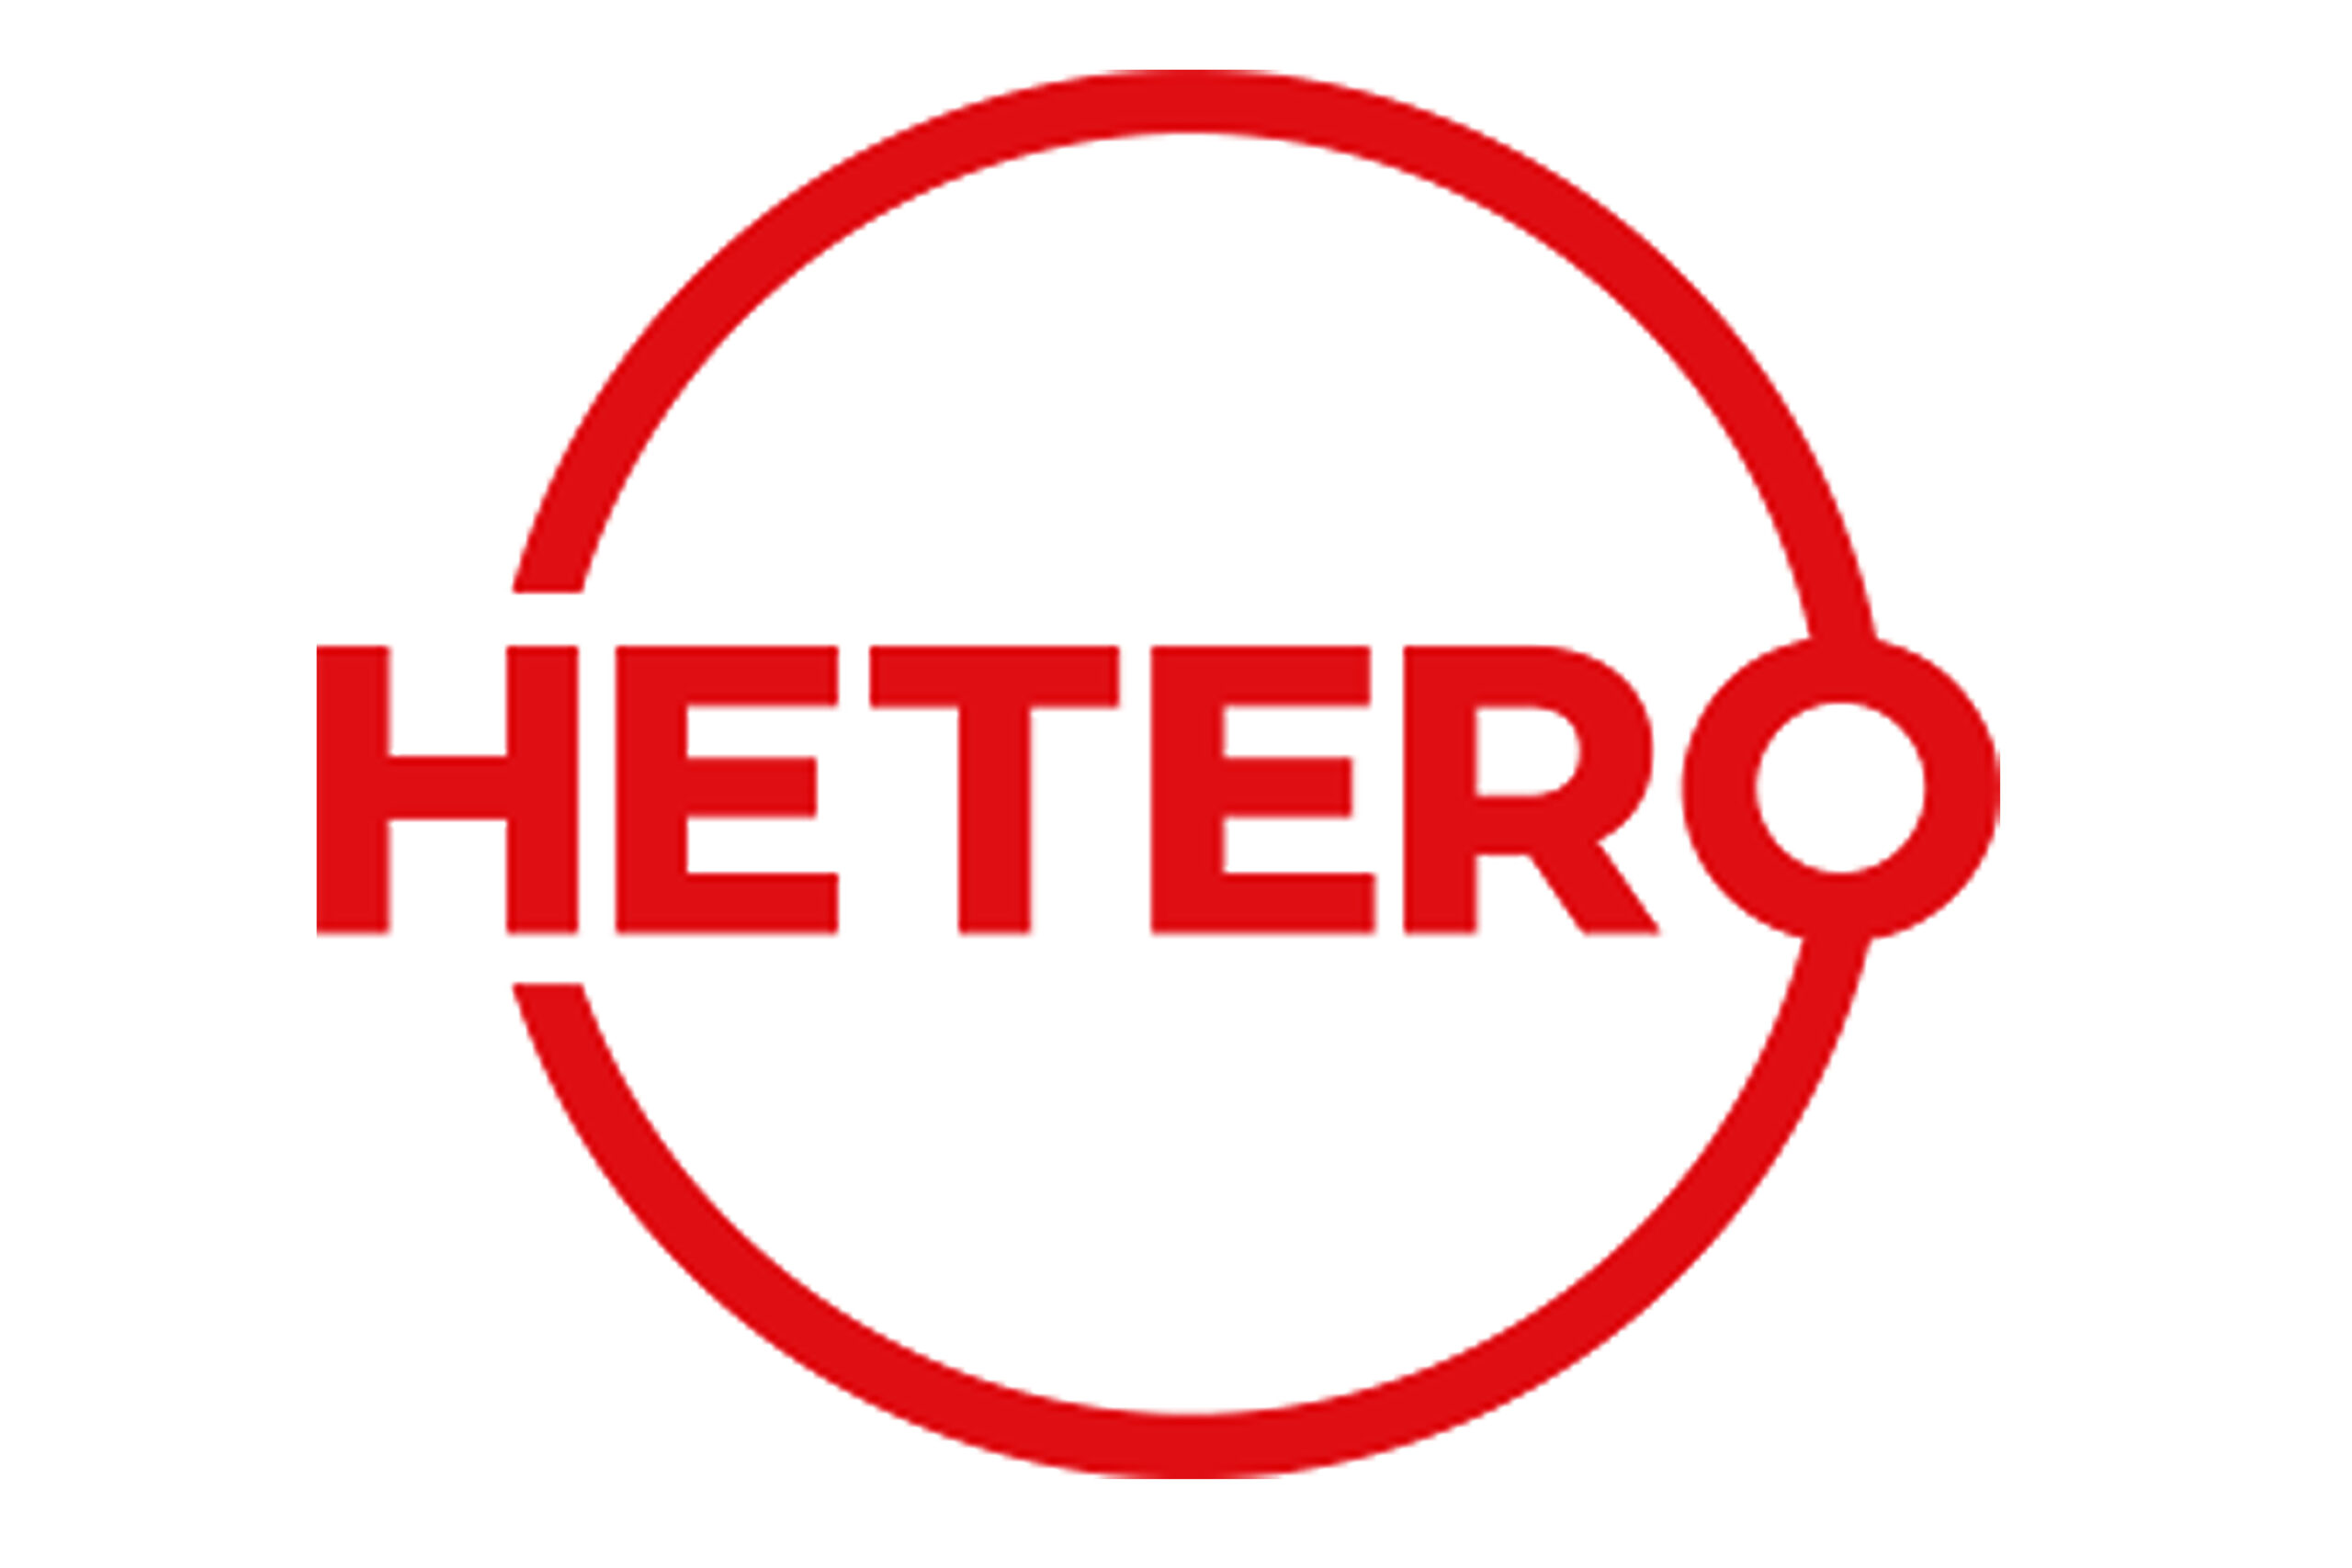 hetero-2